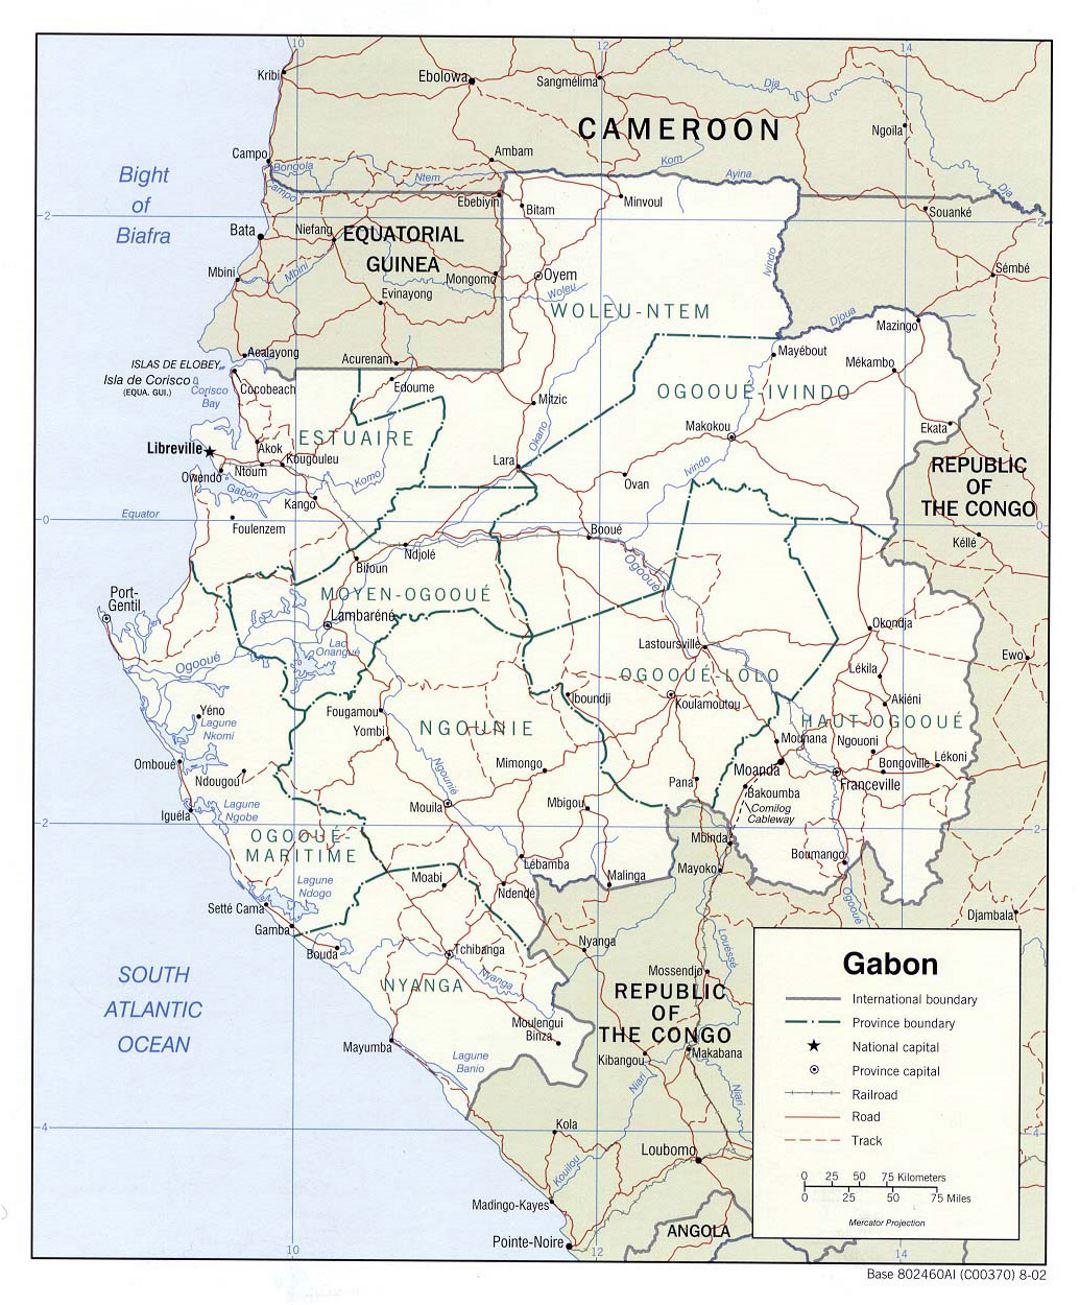 Детальная политическая и административная карта Габона с дорогами, железными дорогами и крупными городами - 2002